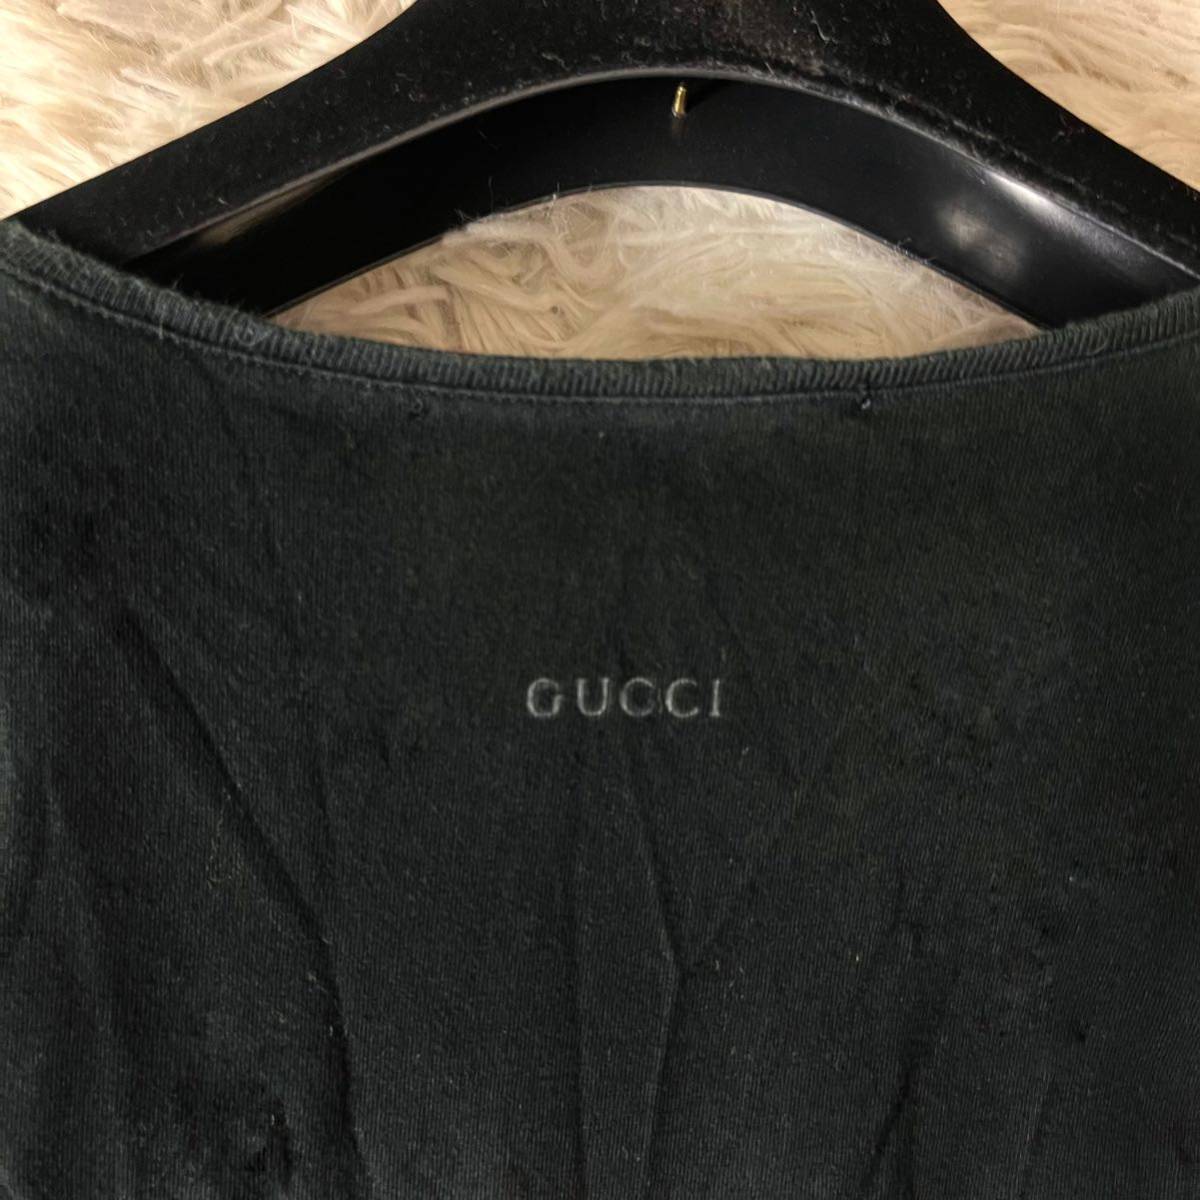 GUCCI Gucci бренд Logo one отметка хлопок футболка короткий рукав вырез лодочкой чёрный черный M